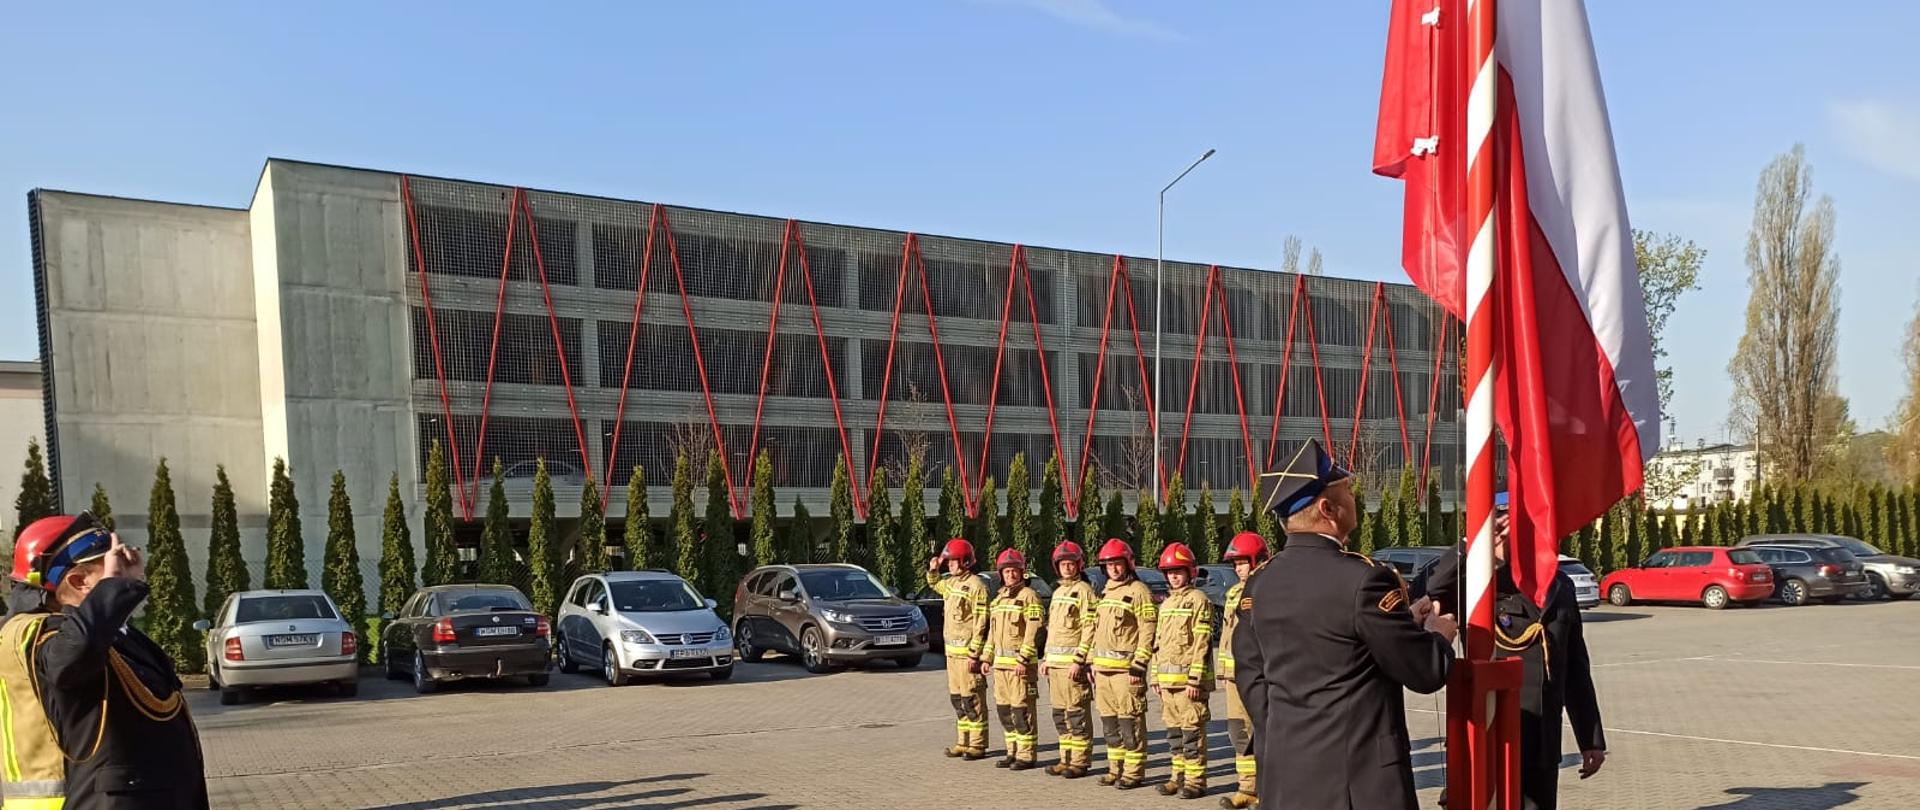 Flaga Rzeczpospolitej Polskiej jest wciągana na maszt strażacy oddają salutują.